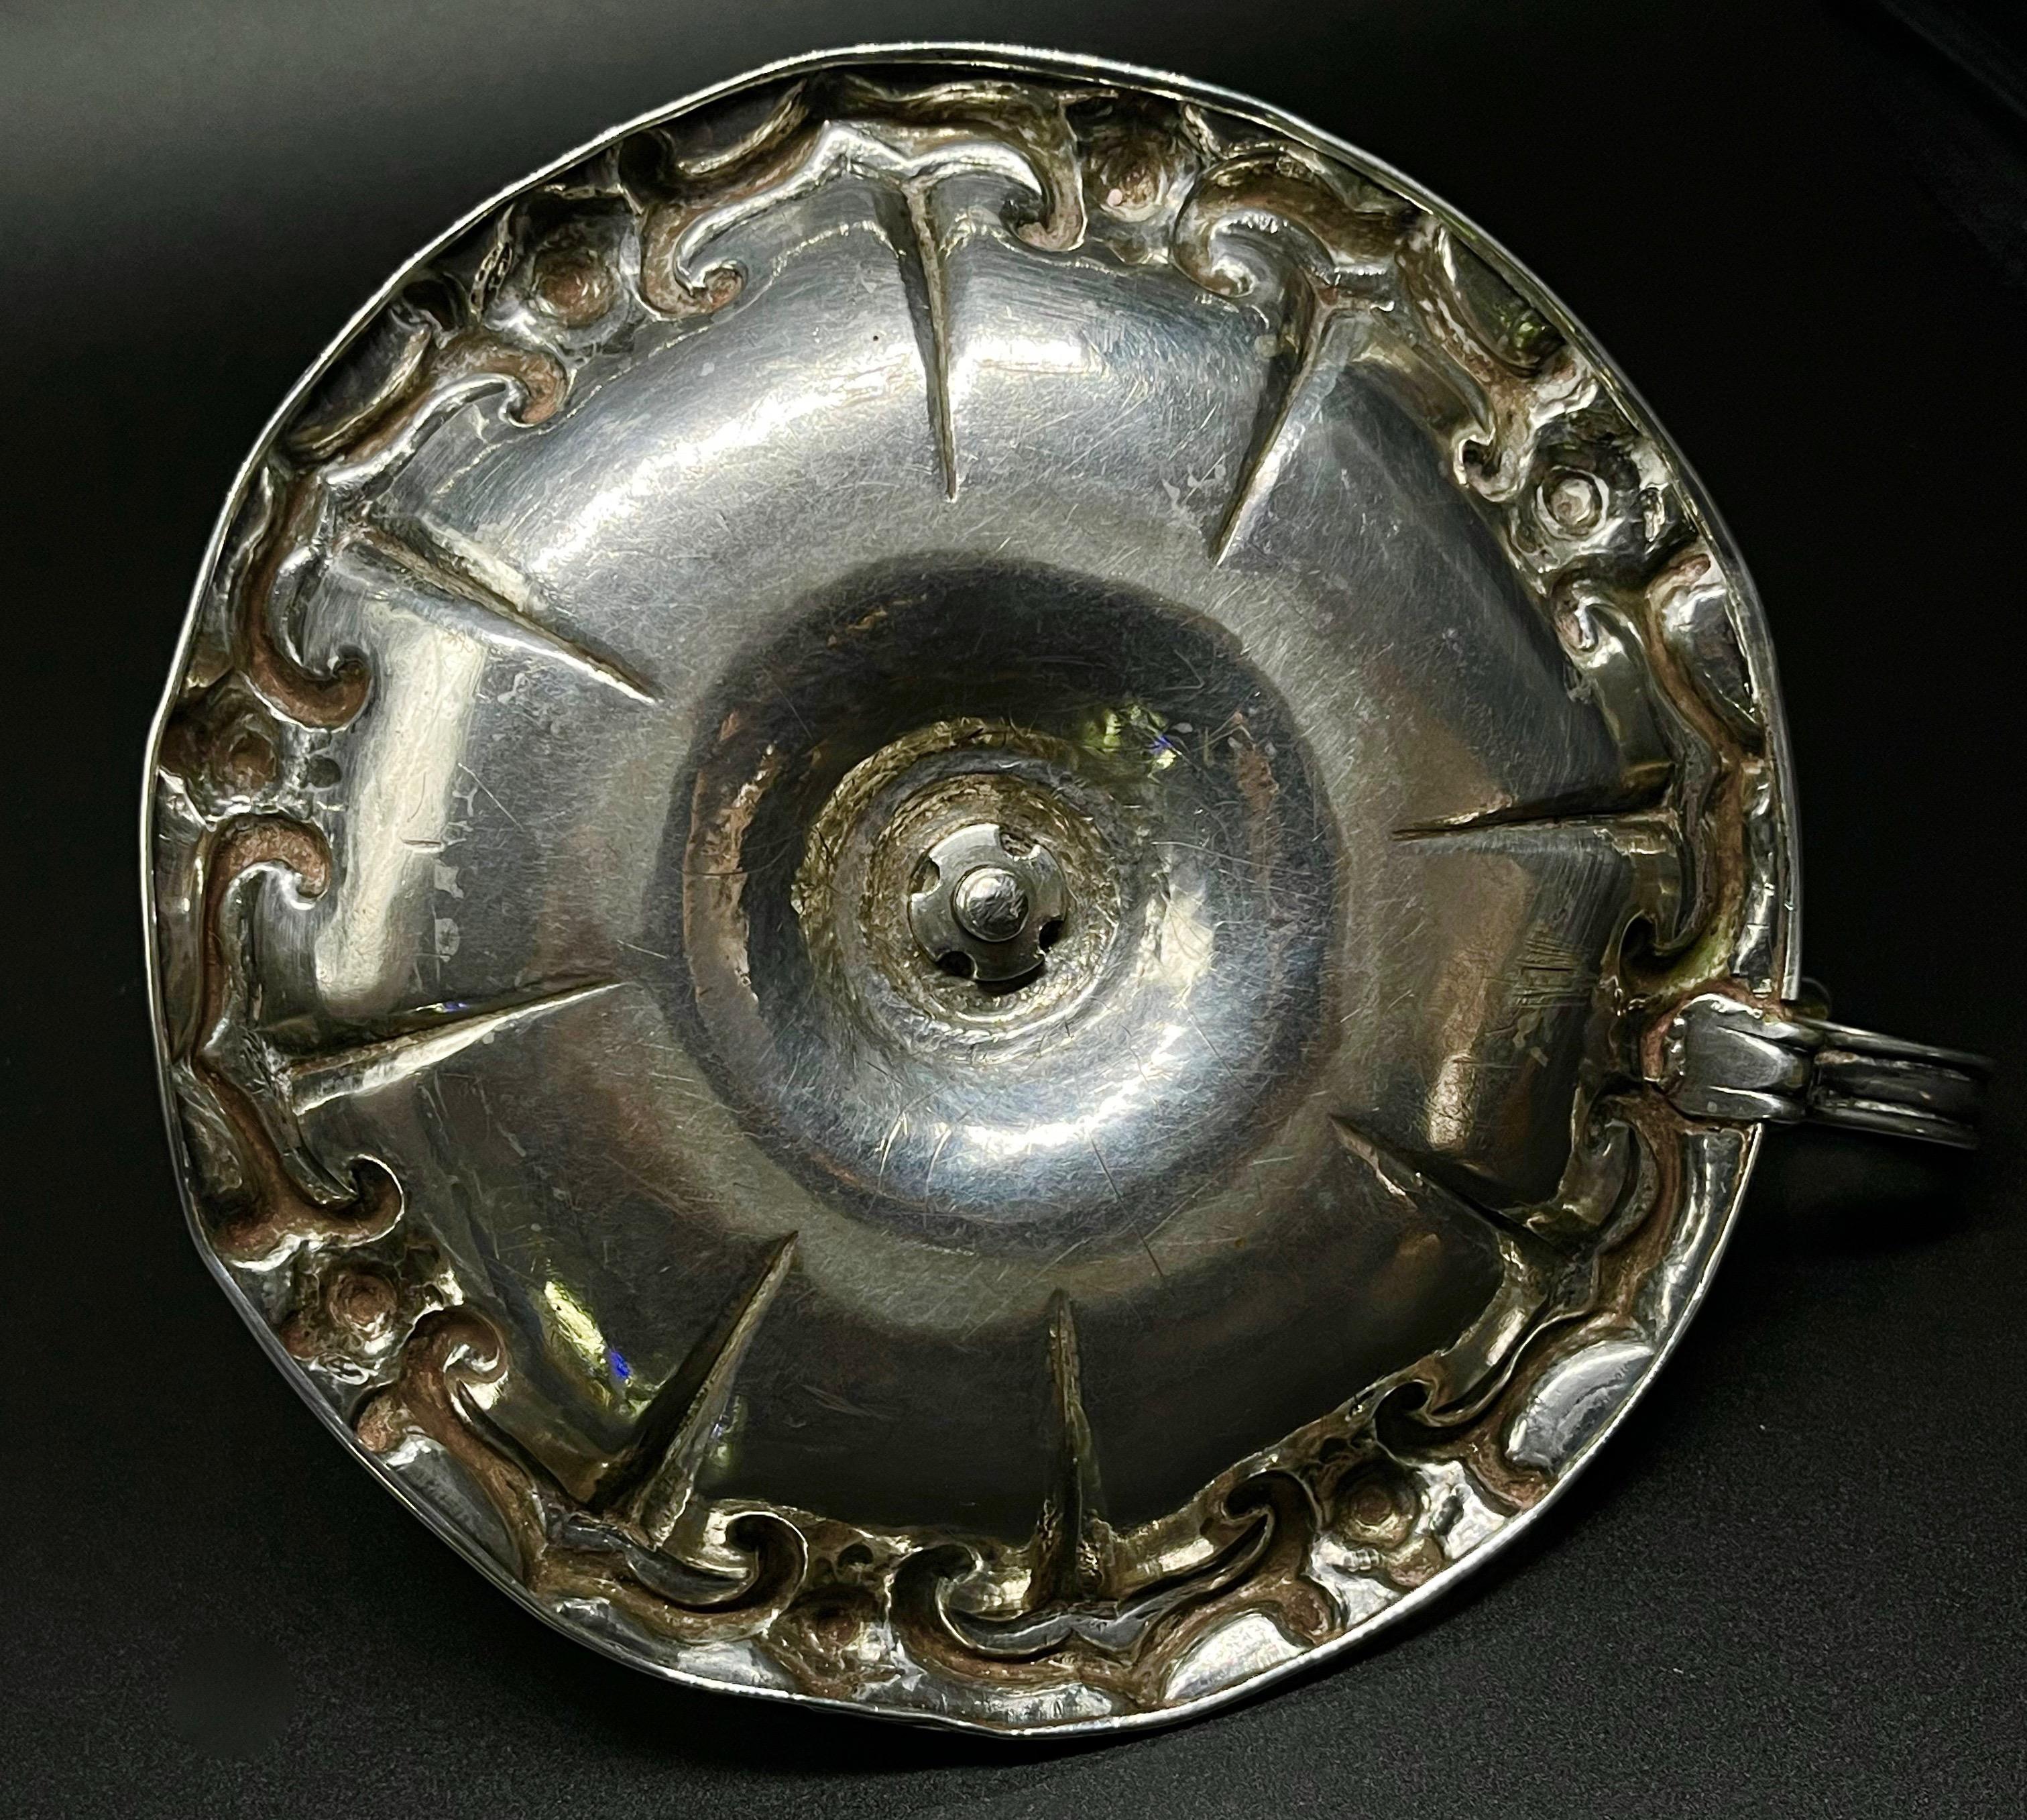 Srebrny muzealny świecznik krużgankowy ze srebrnym kapturkiem i palmetowym uchwytem z zawieszką